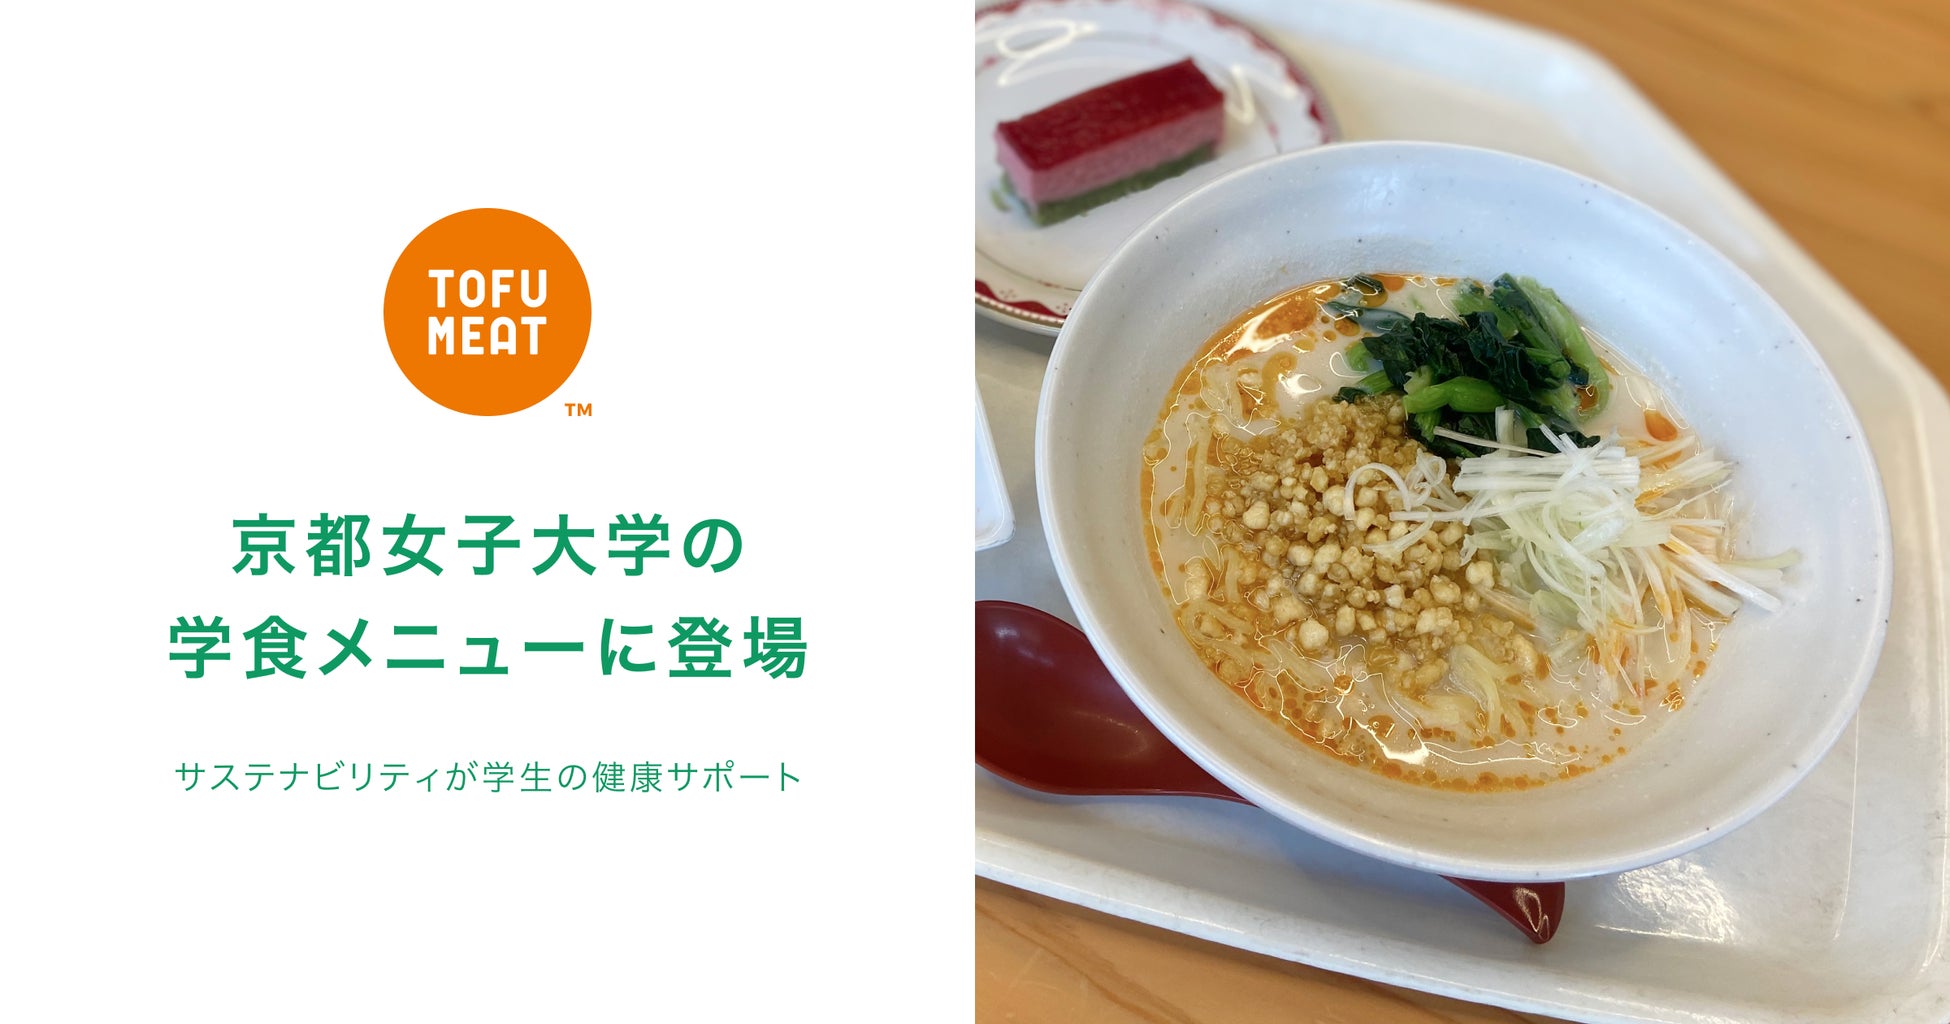 プラントベースフードの革新！豆腐から作る新食材「TOFU MEAT（トーフミート）」が京都女子大学の学食メニューとして登場